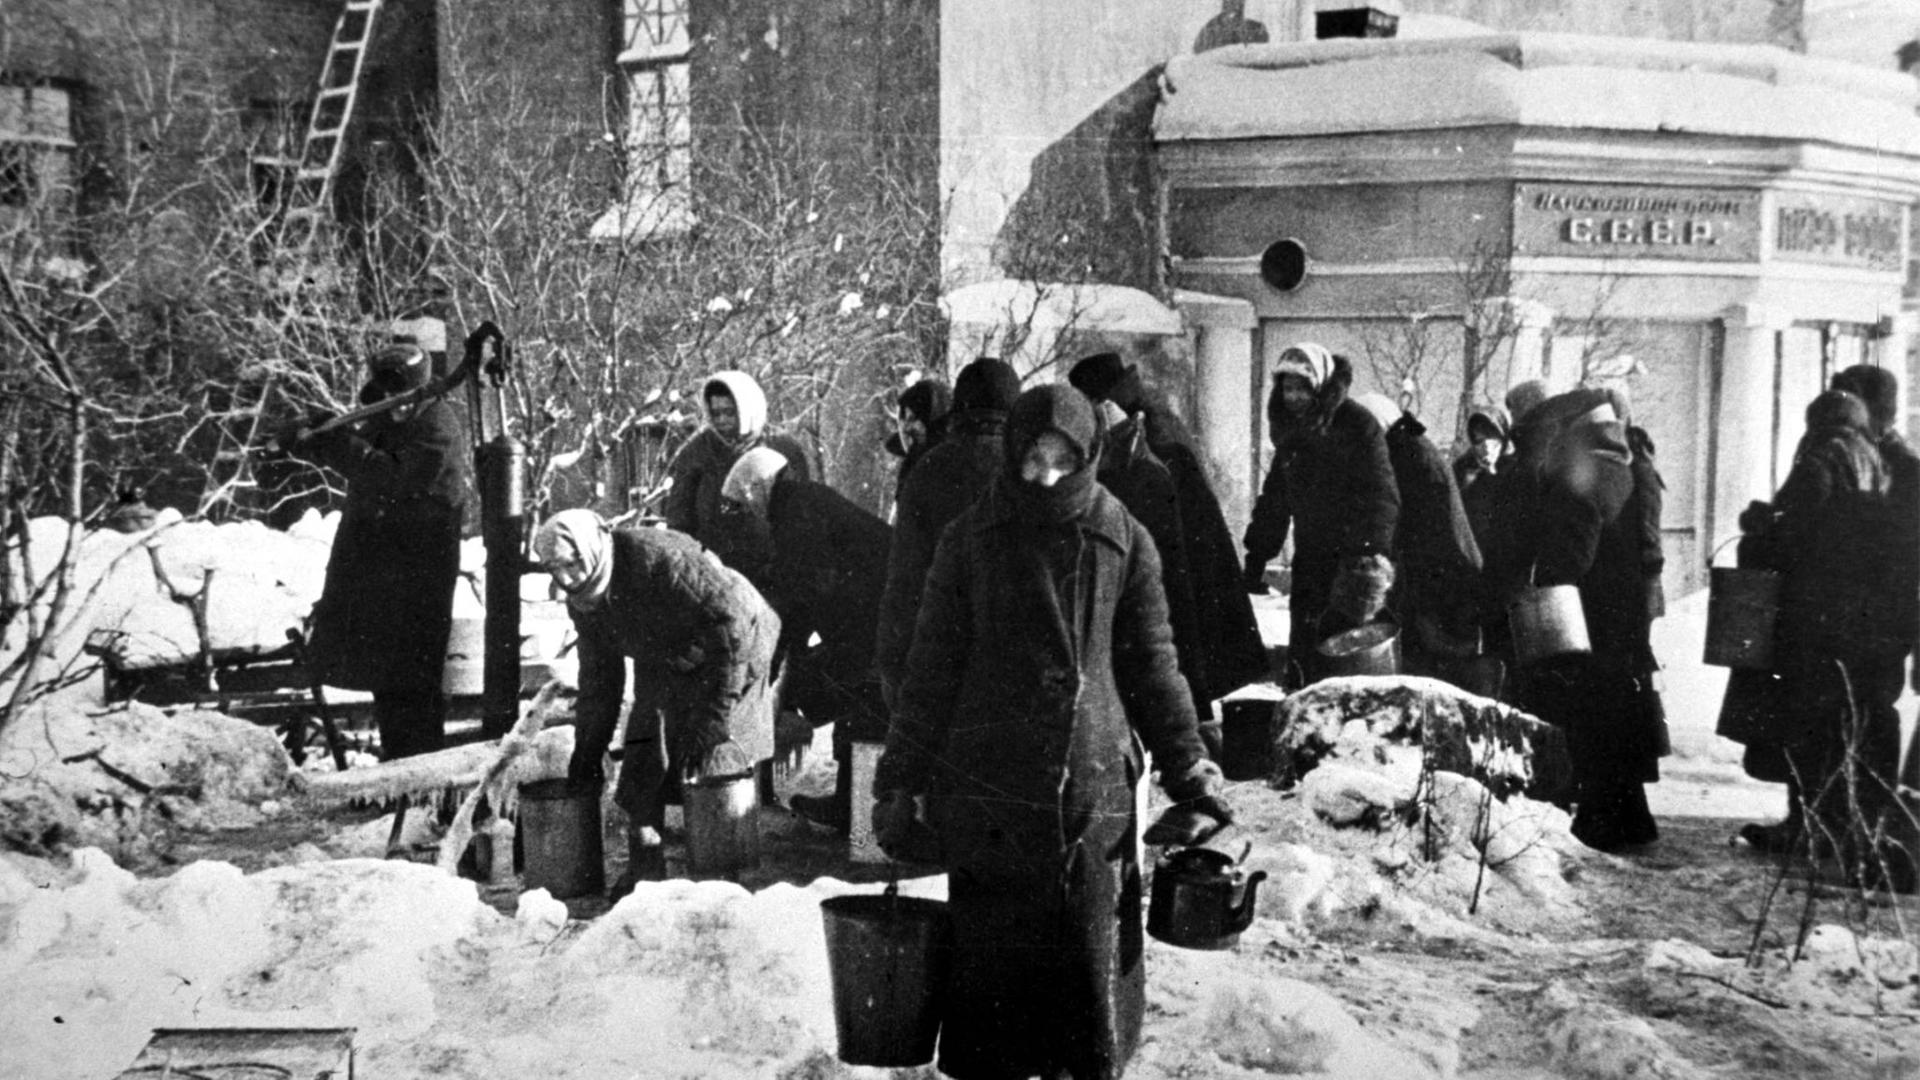 Schwarz-weiß-Aufnahme aus Leningrad im Winter 1942/1943. Mehrere Frauen versammeln sich an einer Wasserpumpe, im Hintergrund ein Haus.